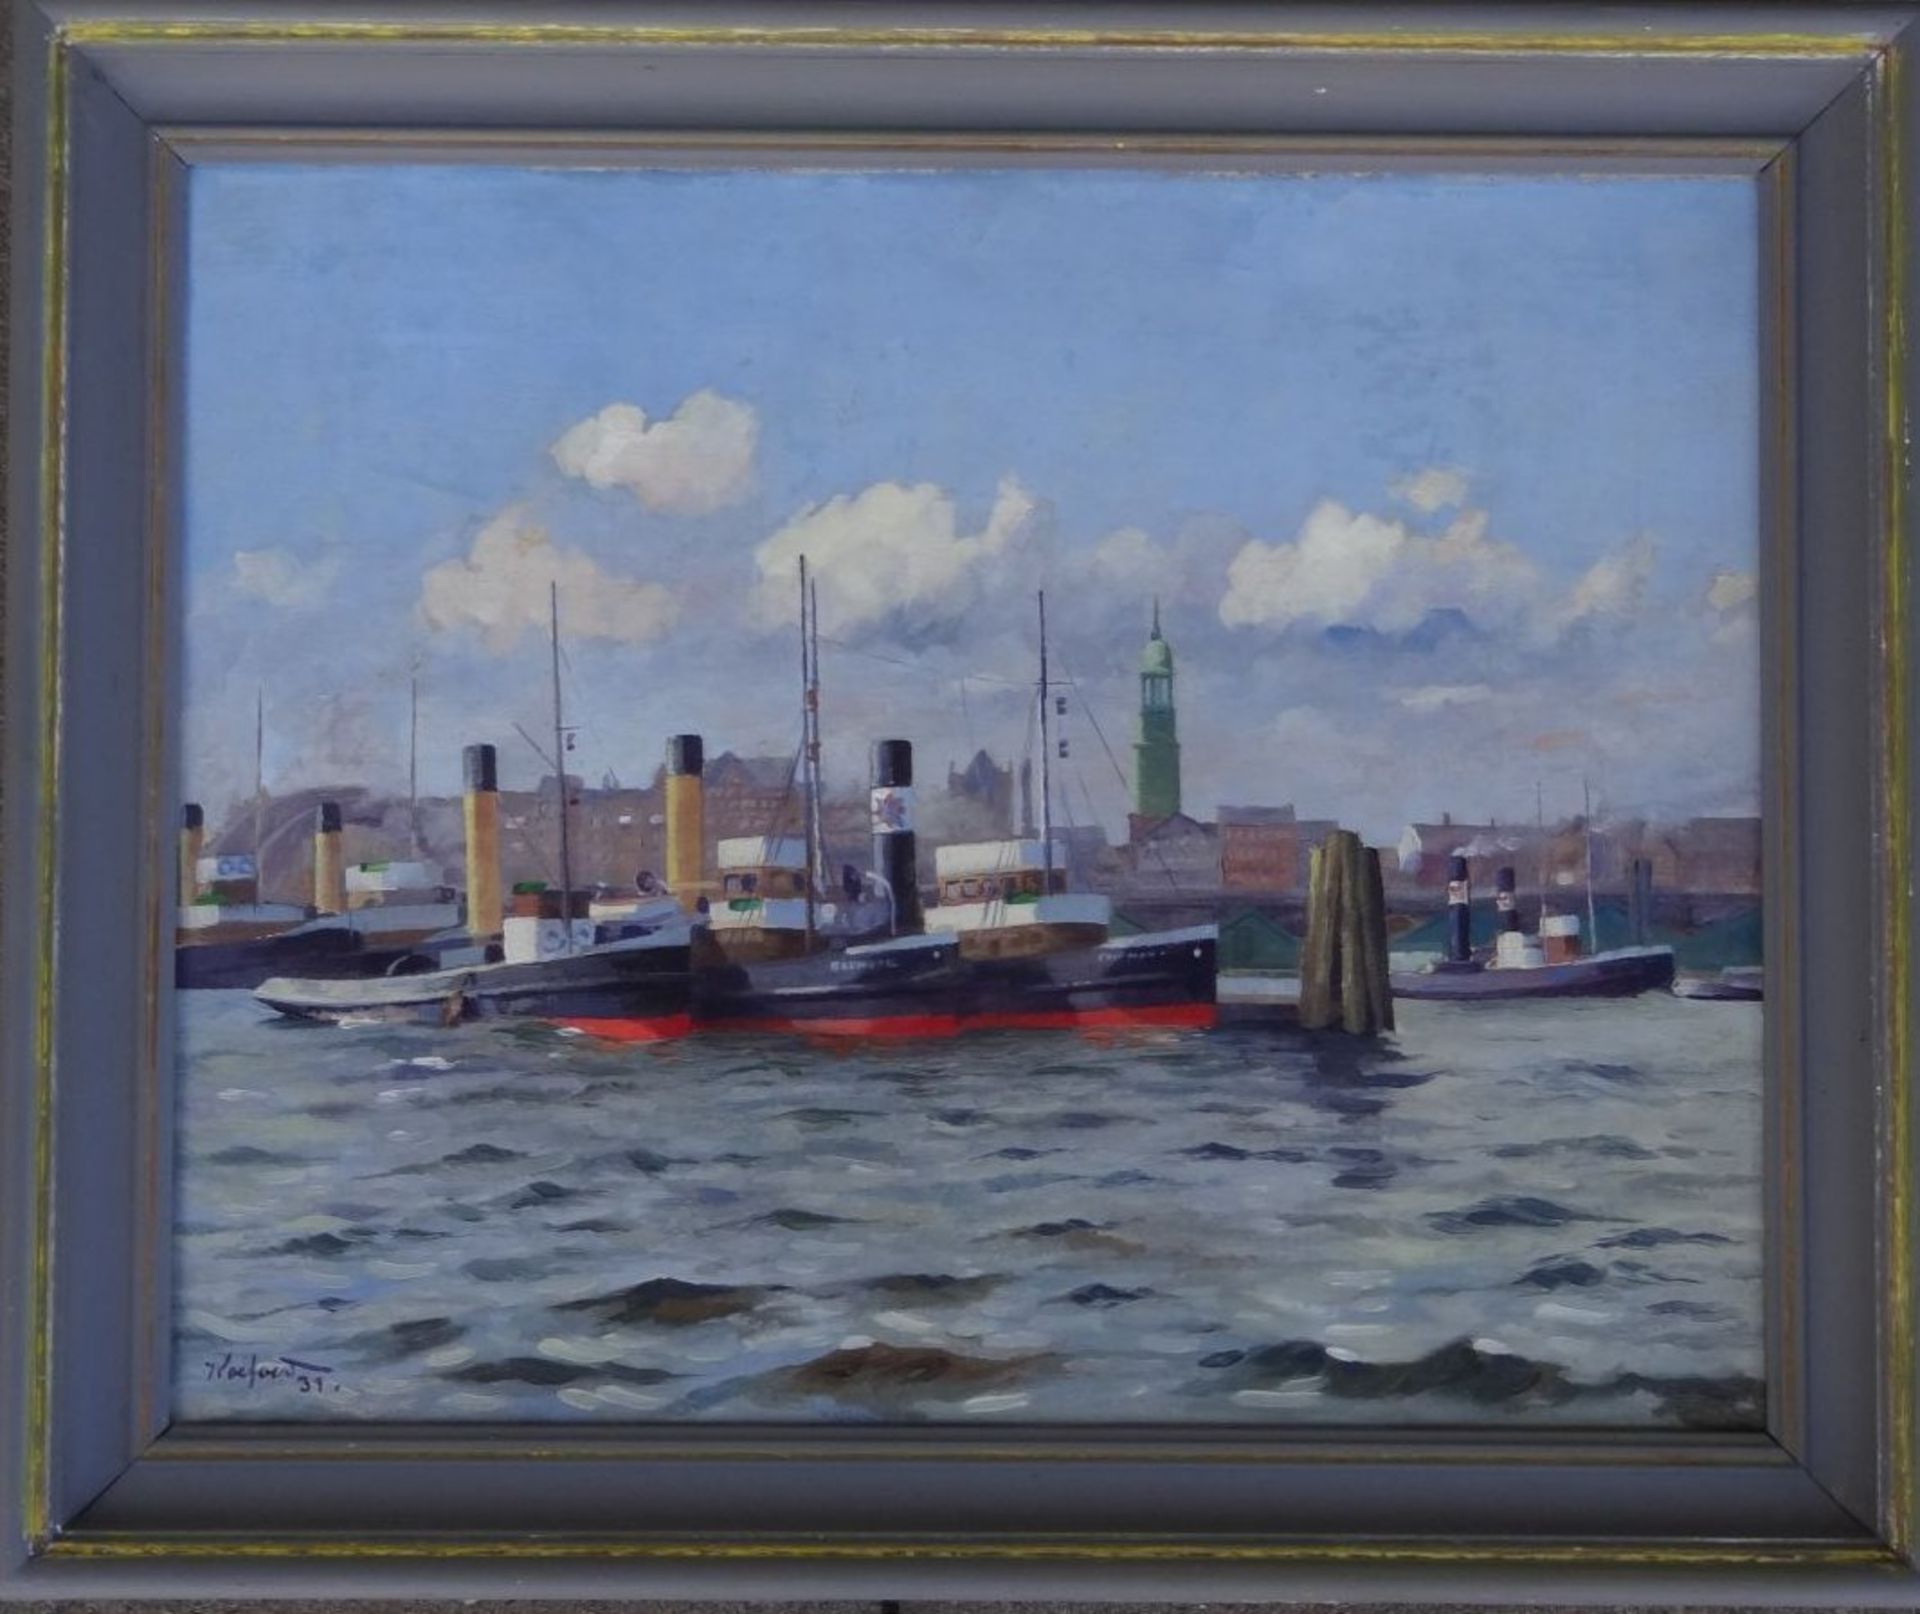 Koeford (oder ähnlich), 1931 "Hamburger Hafen", Öl/Leinen, gerahmt, RG 42x50 cm, frisch - Image 2 of 6